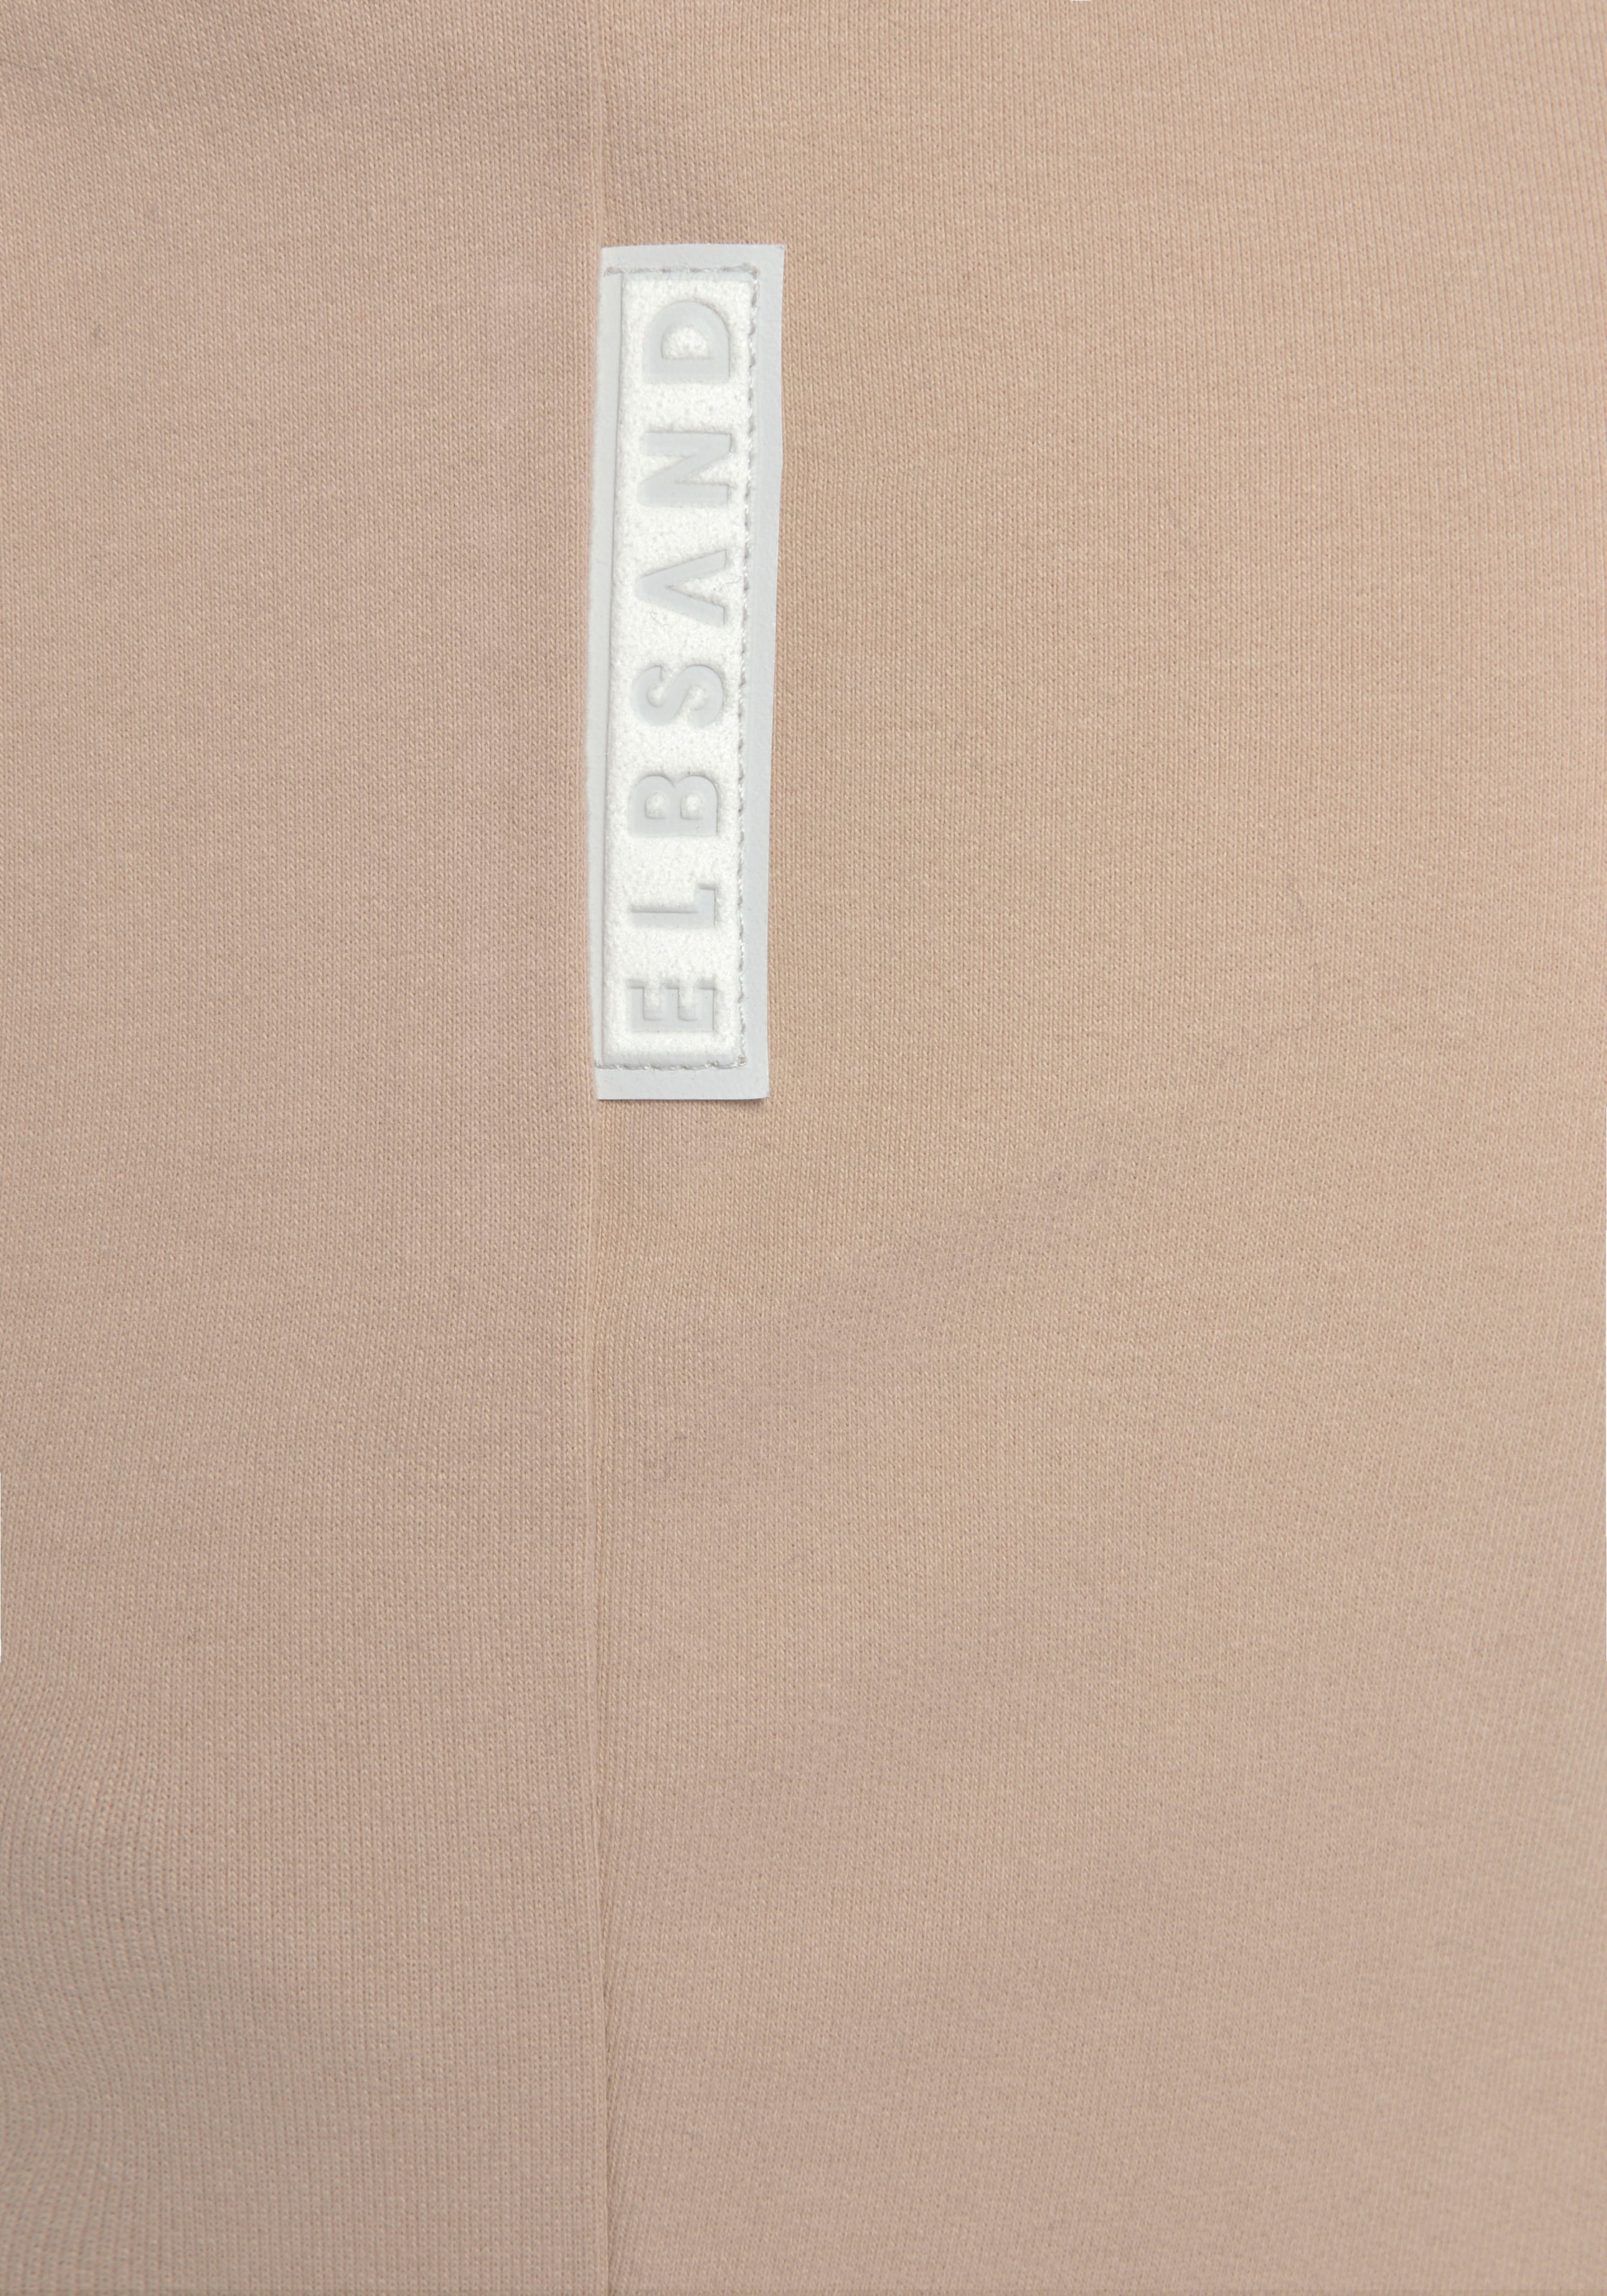 Elbsand Sweathose »Brinja«, mit Taschen und breiten Kordeln, Jogginghose, lässige Passform